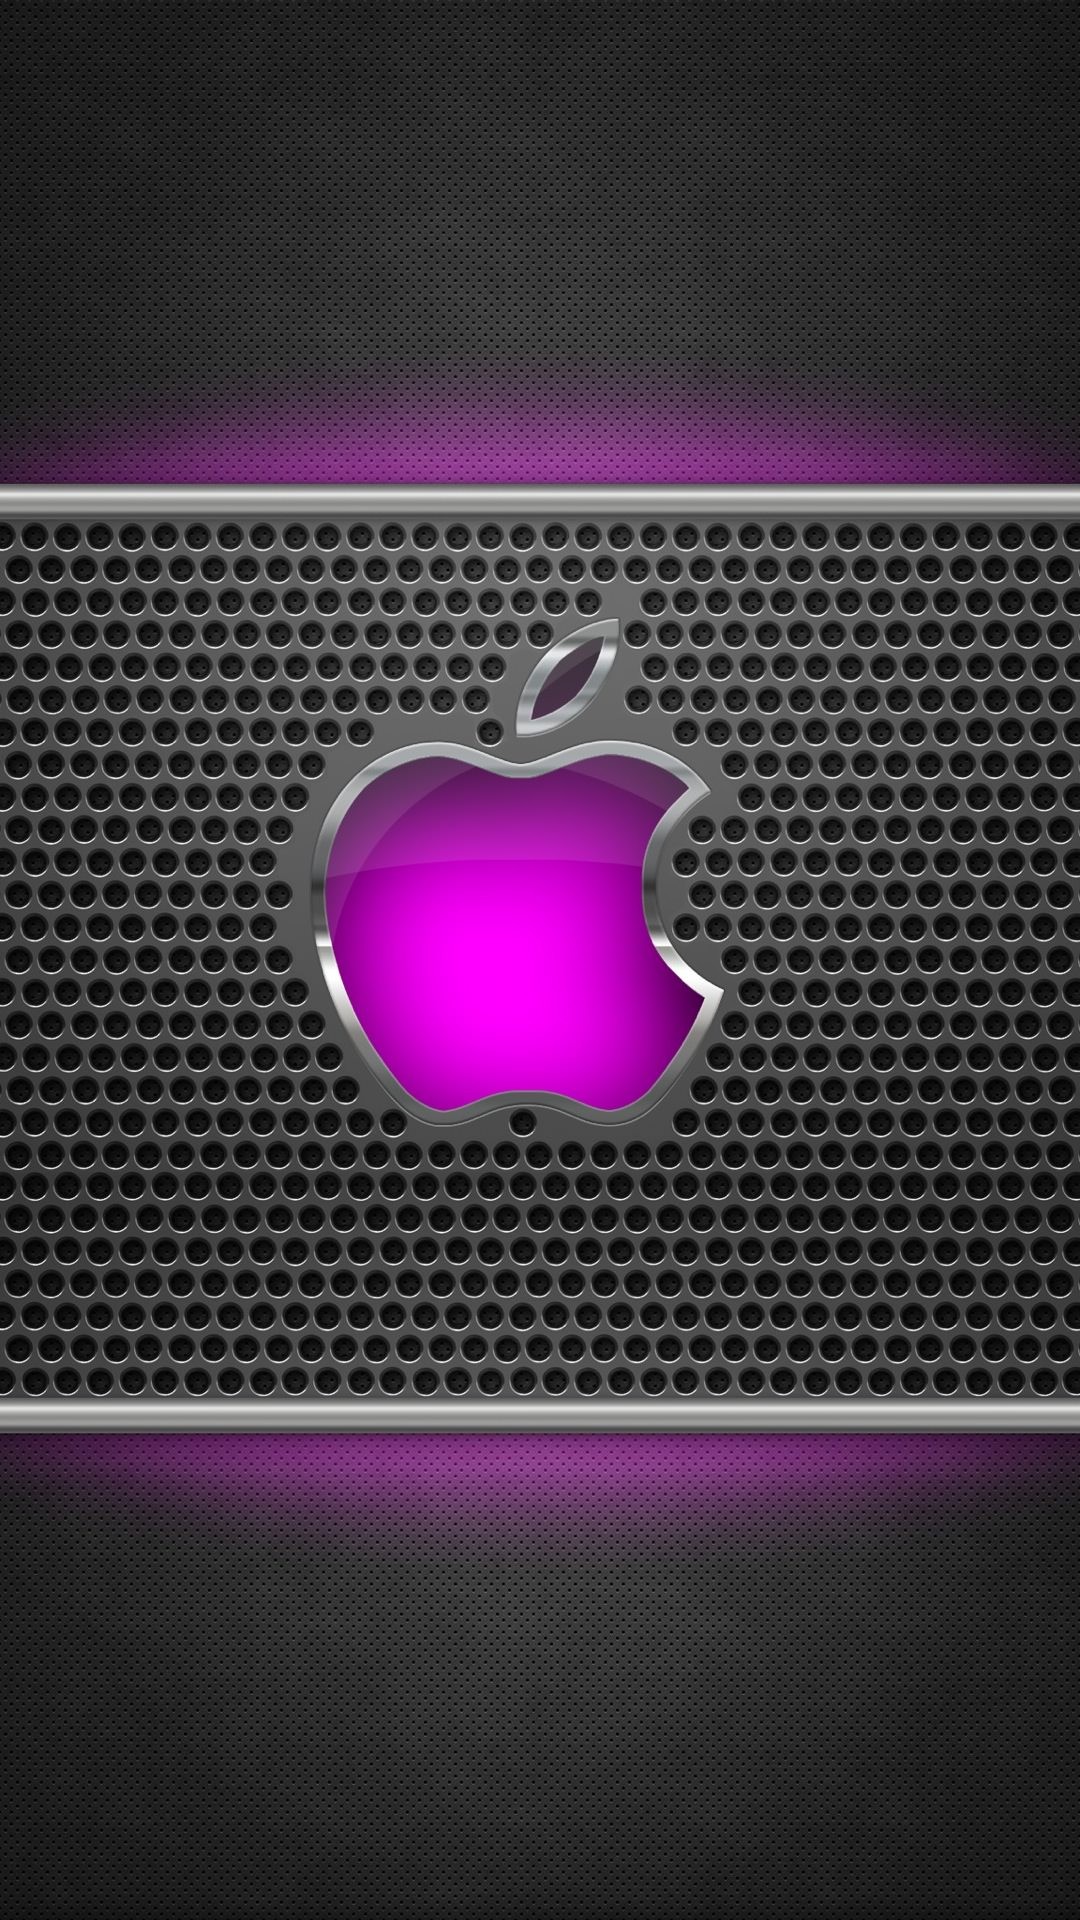 1080x1920 metal apple iphone logo - Bing images